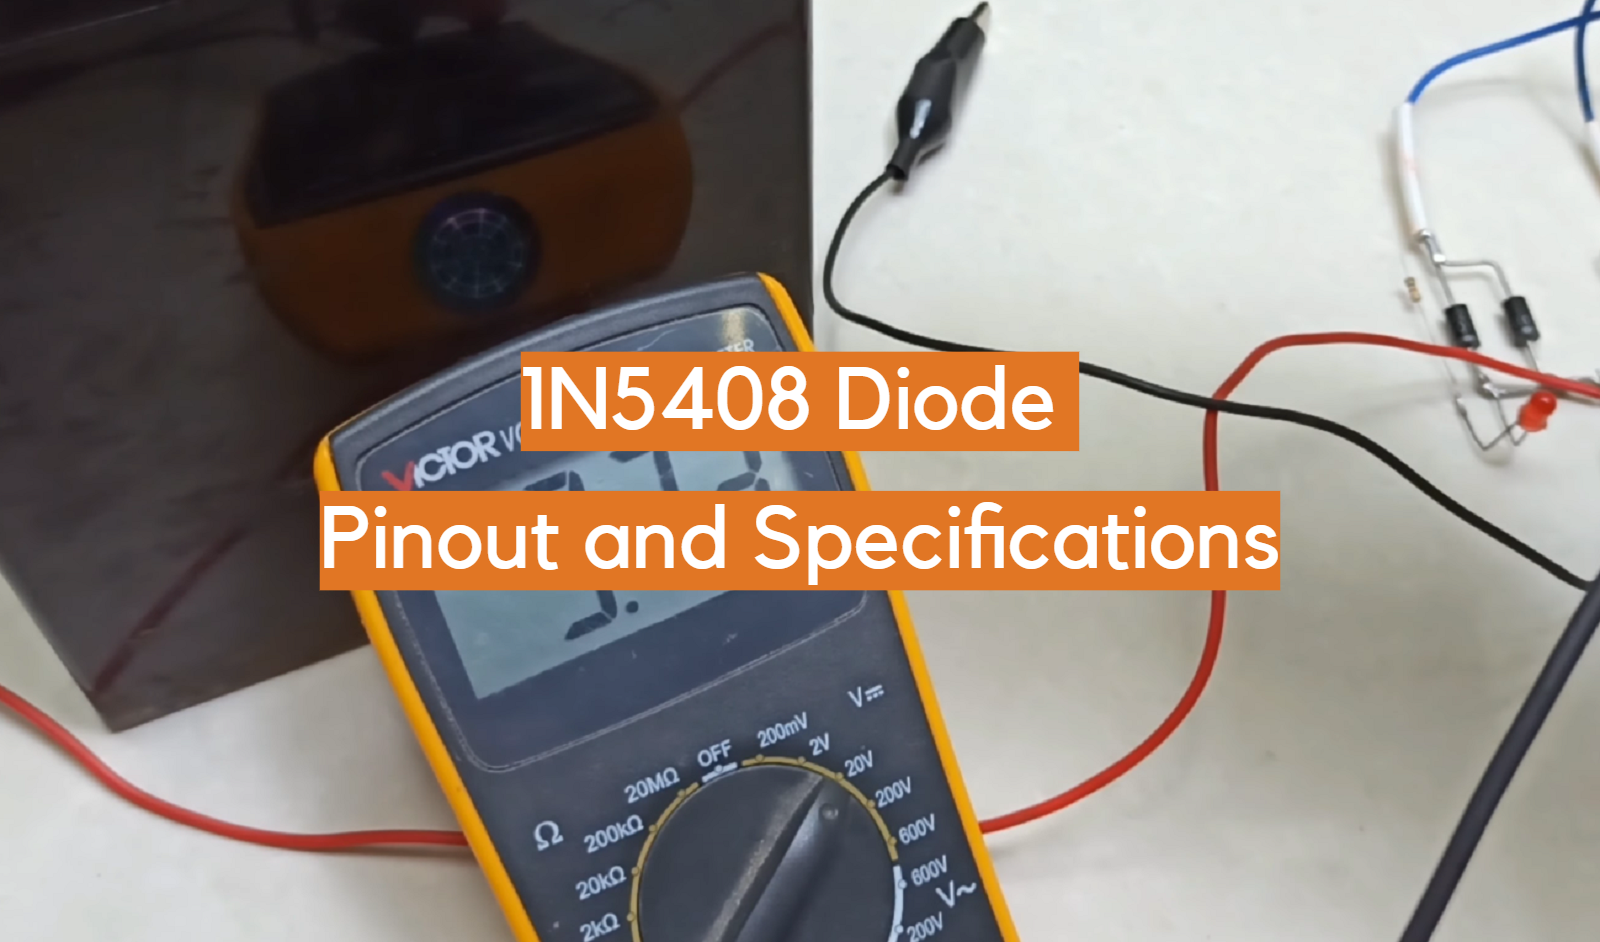 Pinout y especificaciones del diodo 1N5408